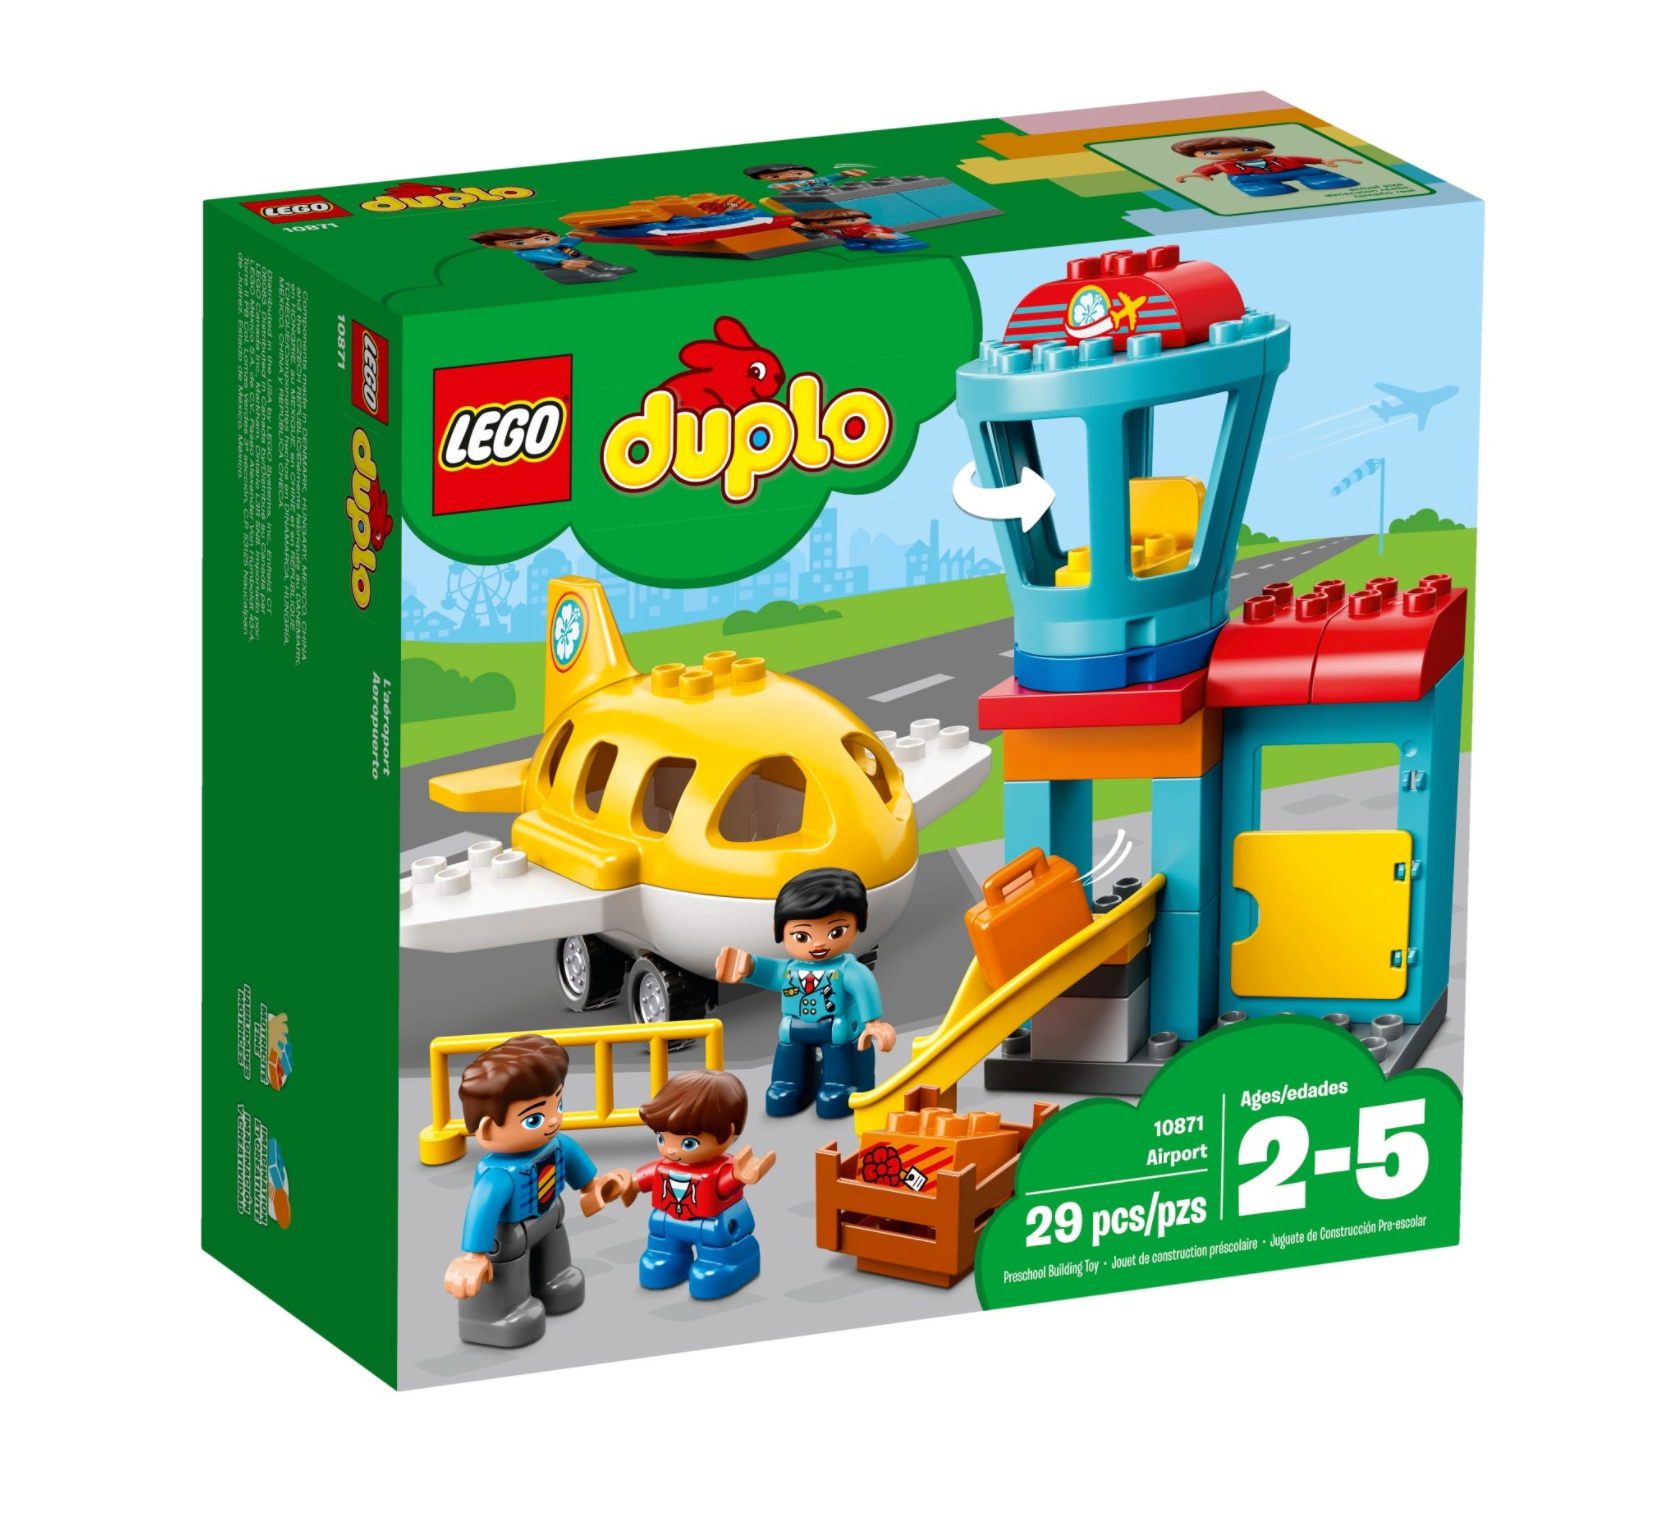 LEGO: DUPLO - Airport